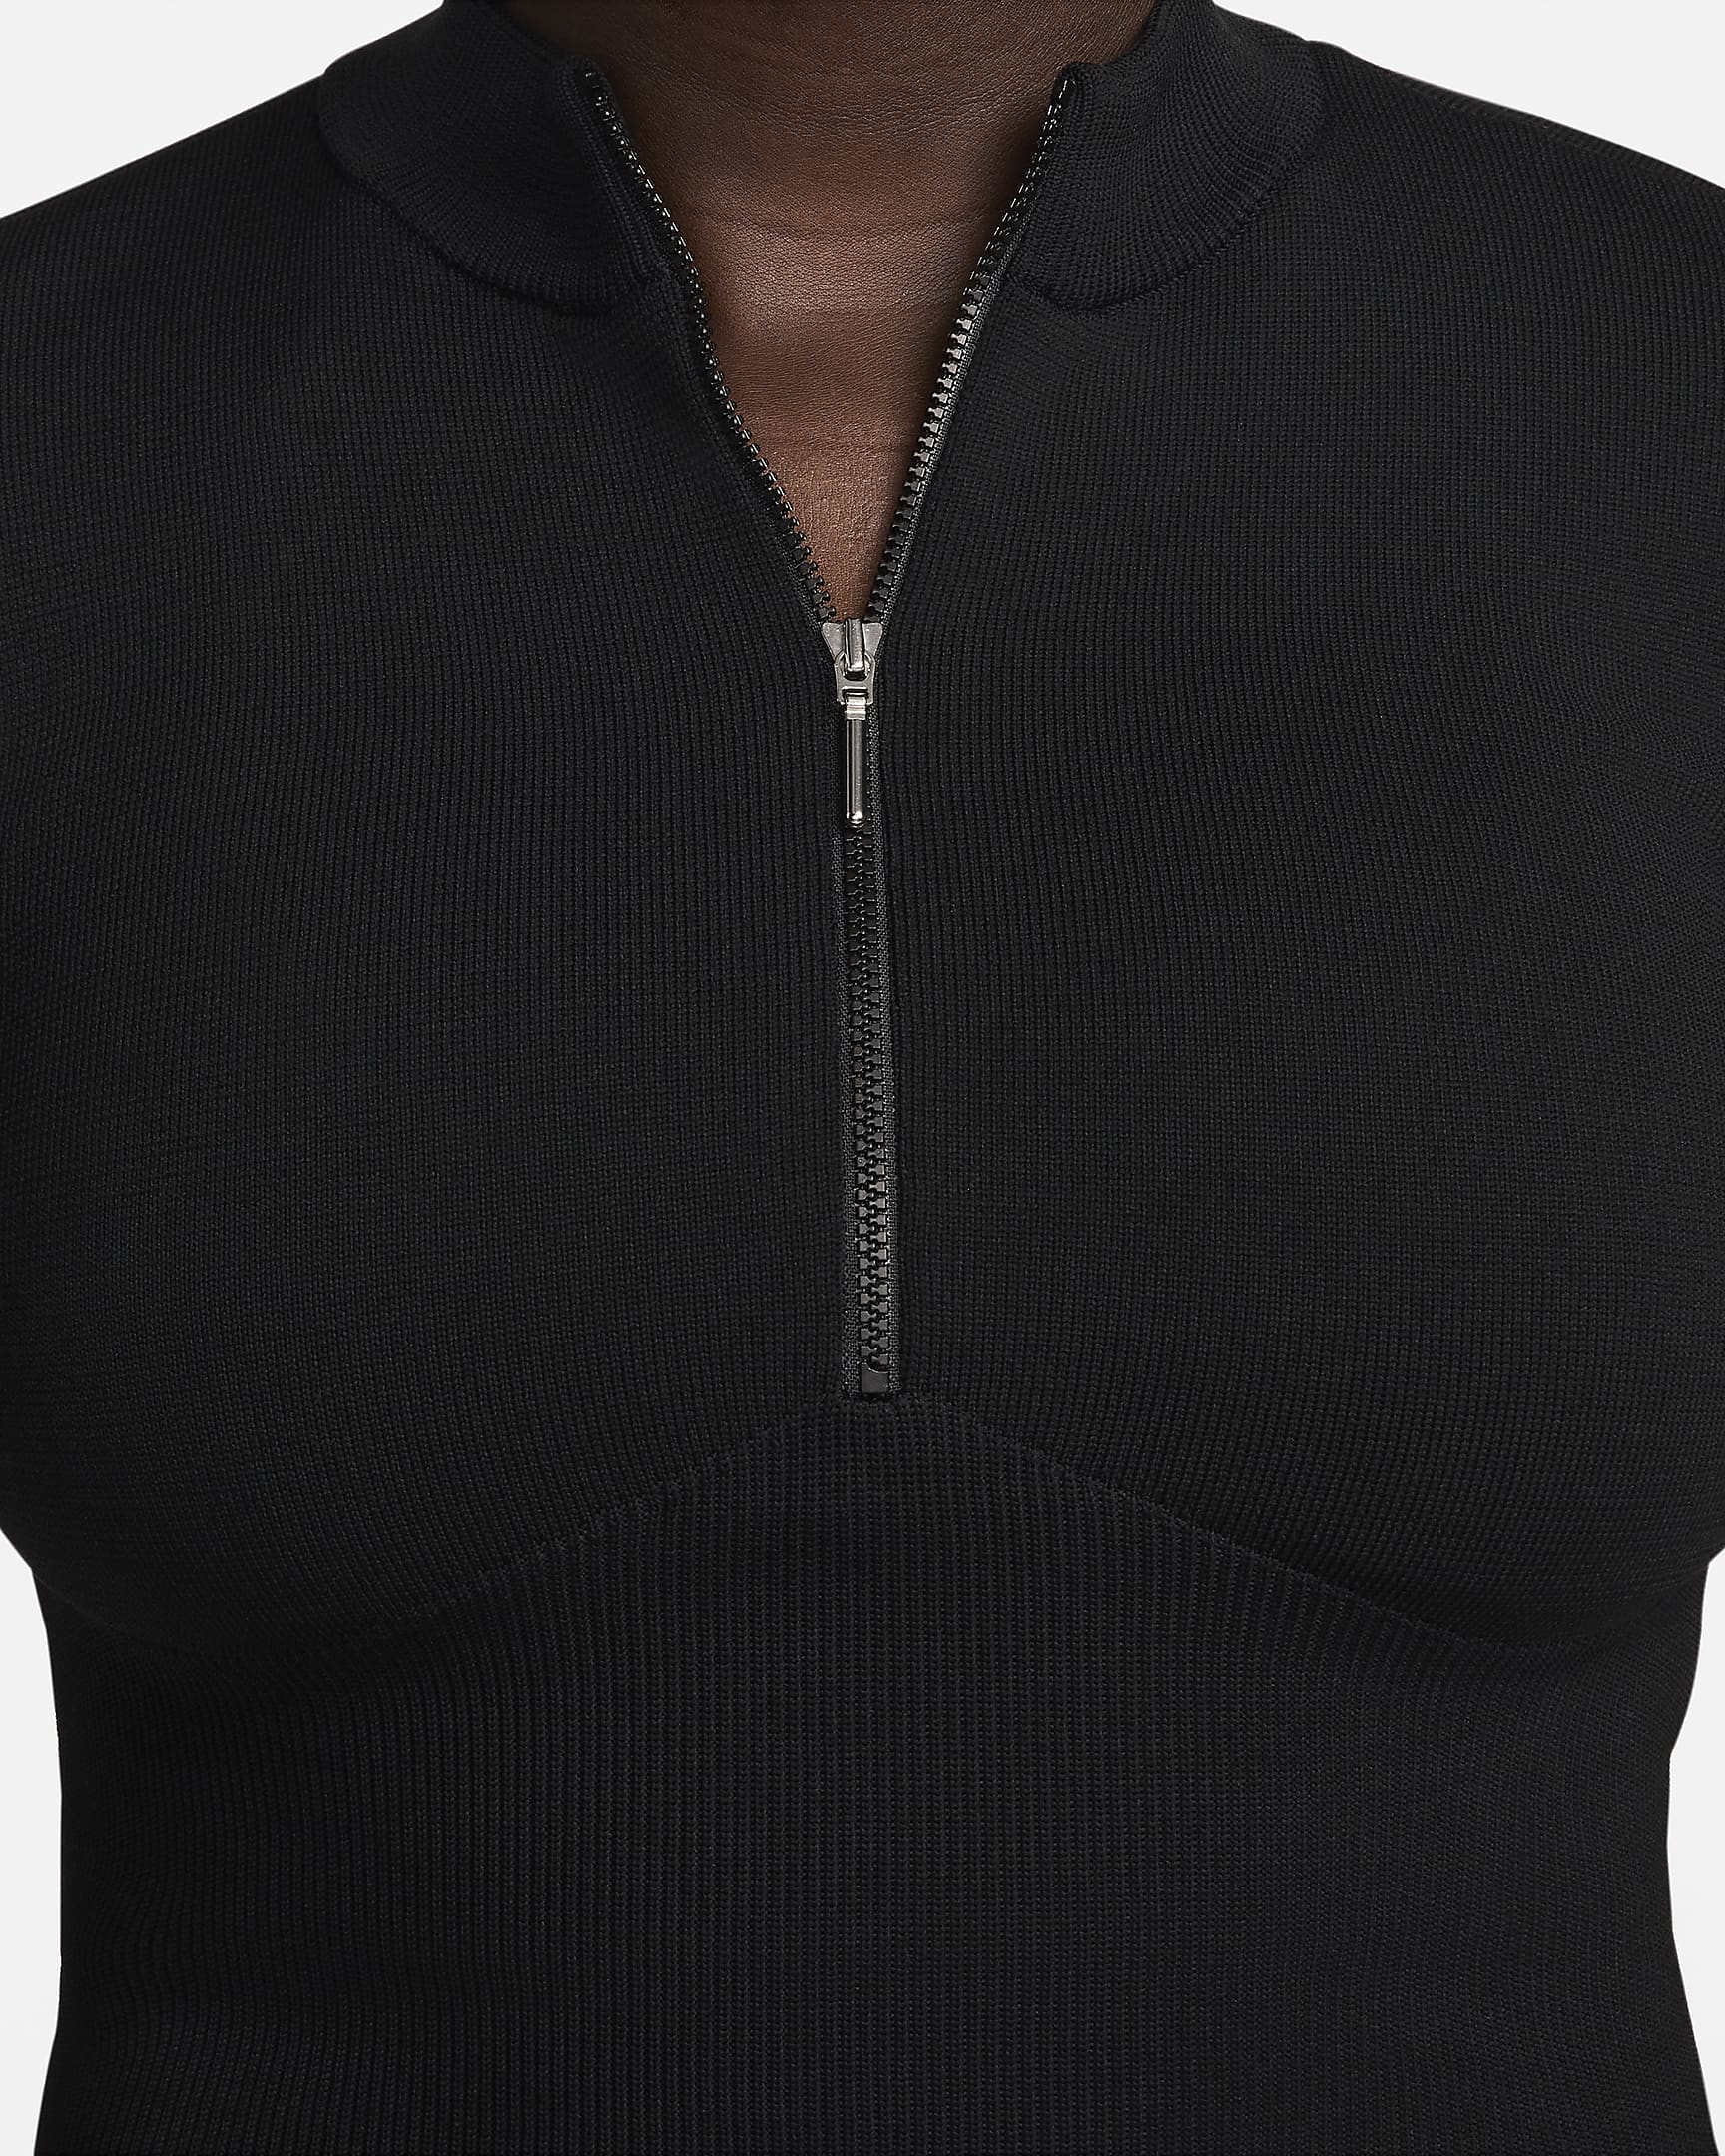 Nike Sportswear Chill Knit Women's Slim Long-Sleeve Cropped Jumper 1/2 ...